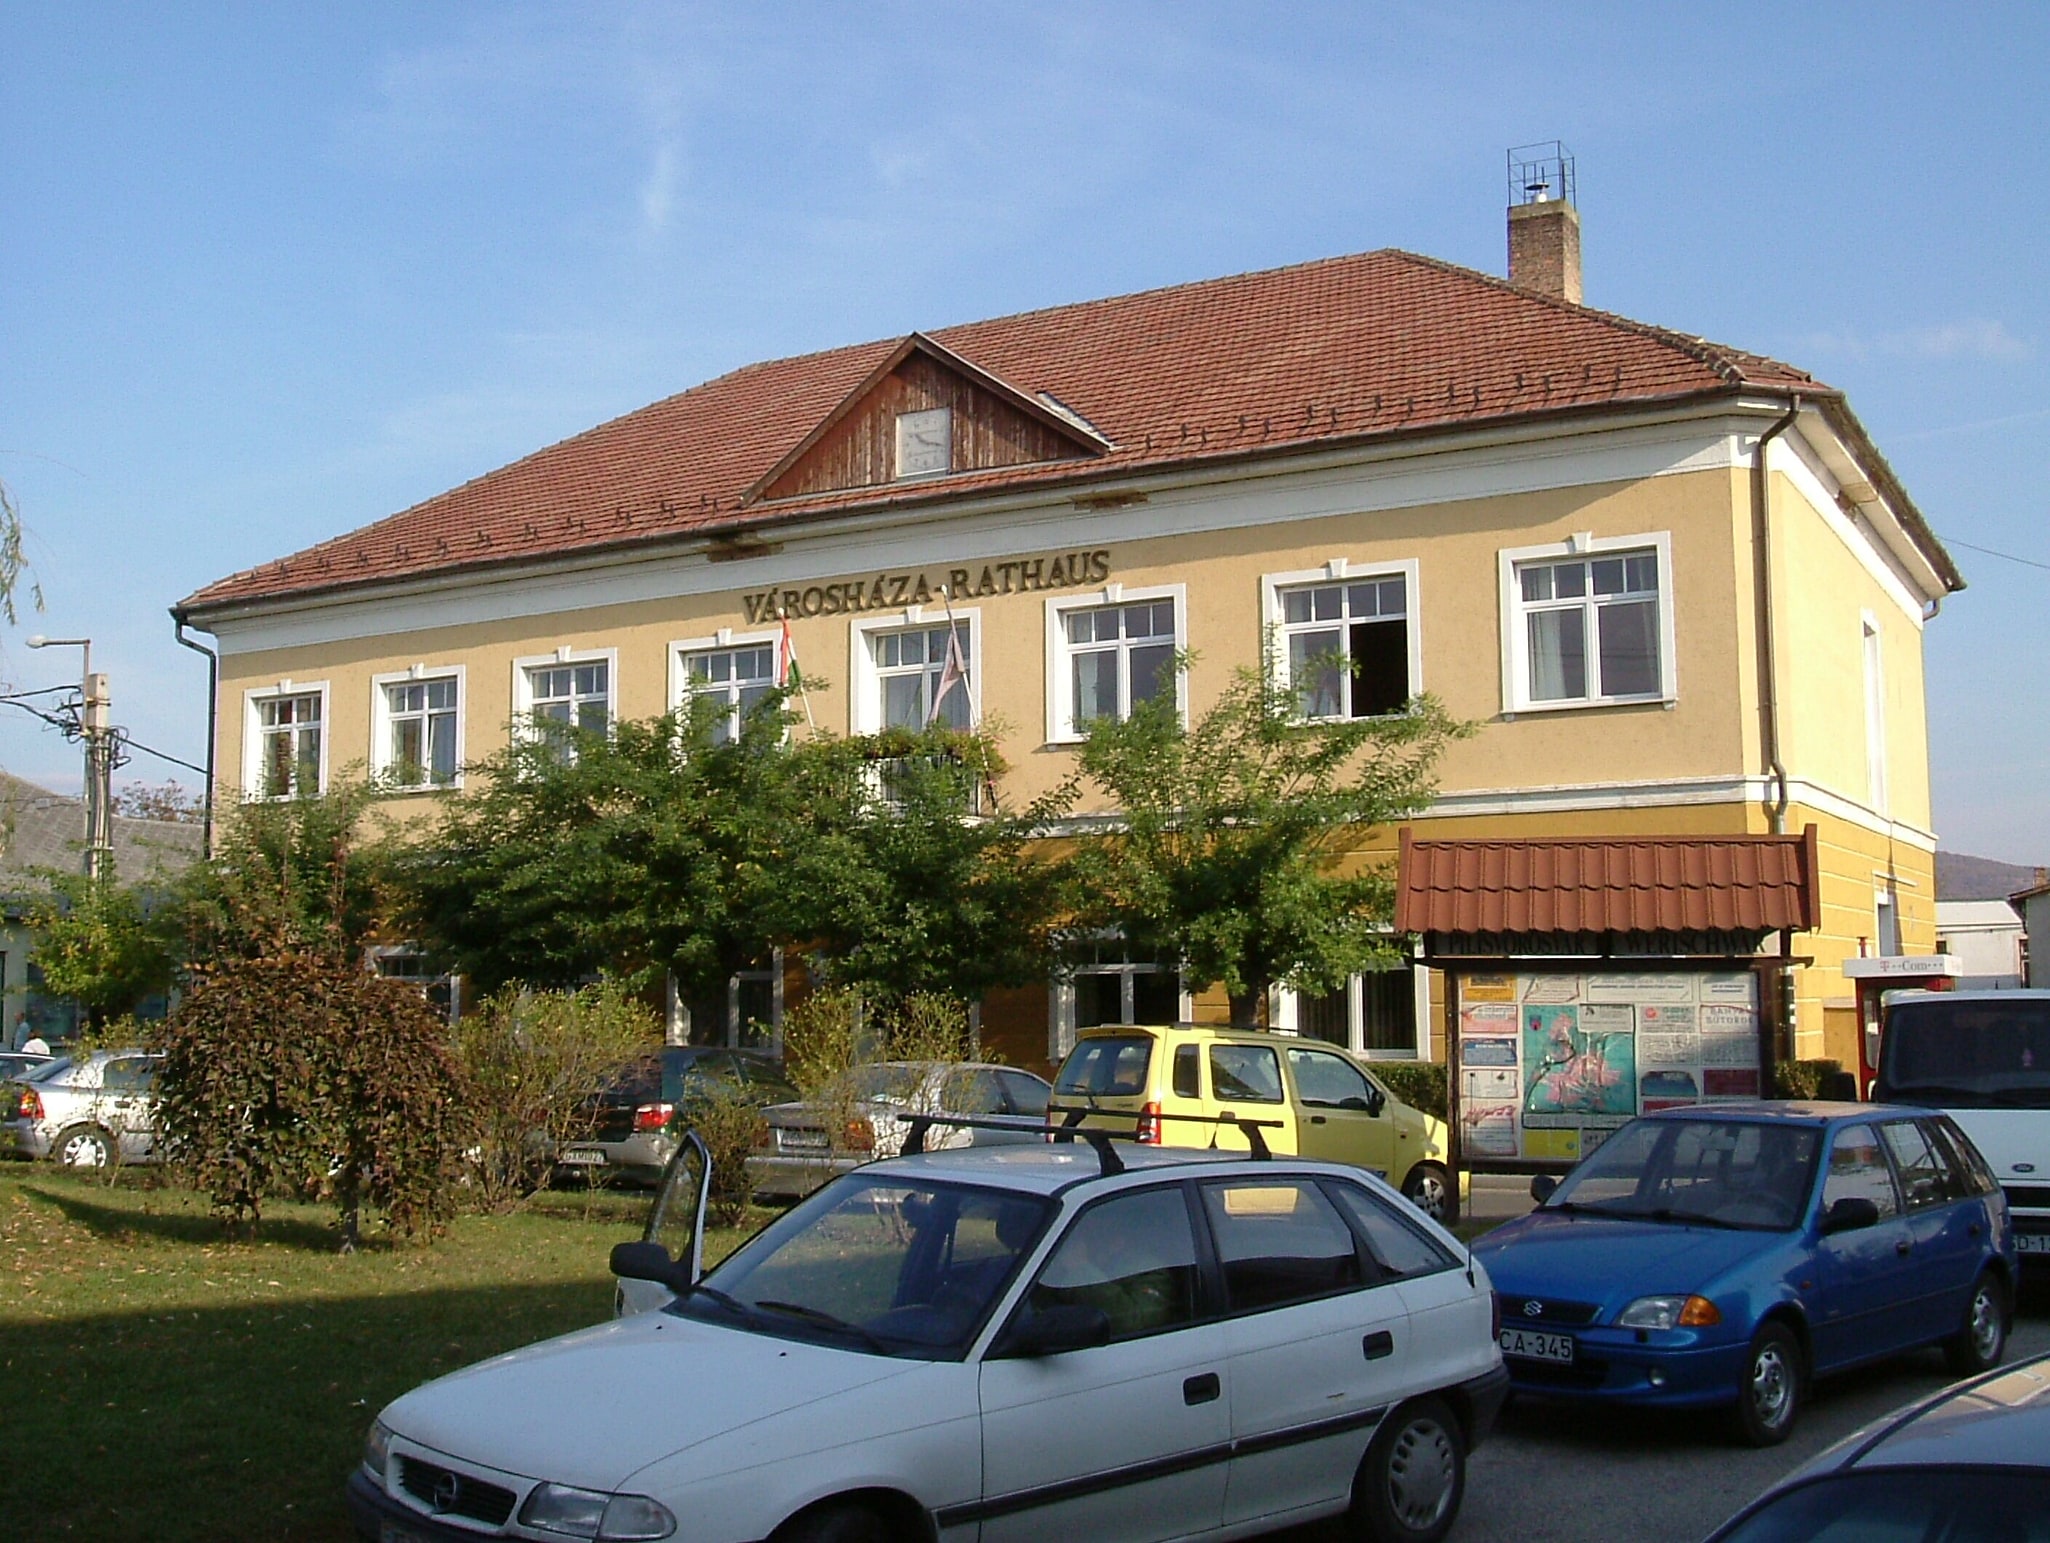 Pilisvörösvár, Hungary